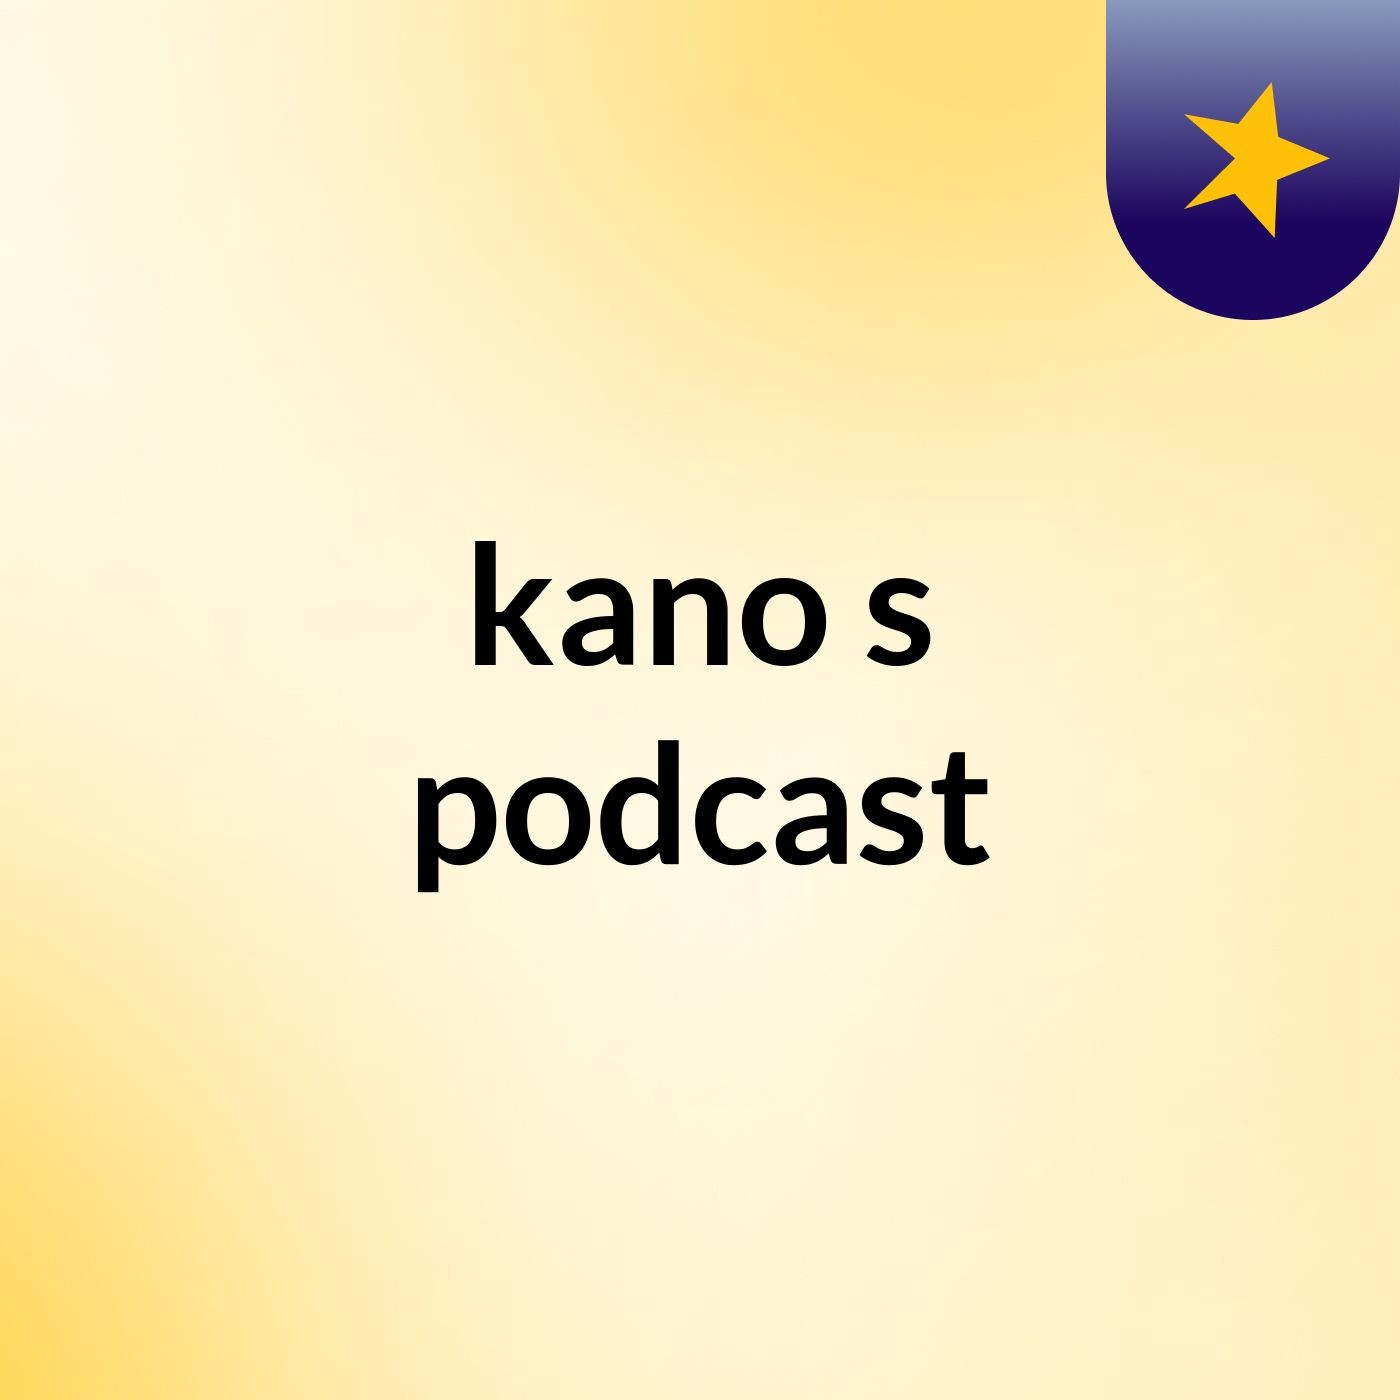 kano's podcast